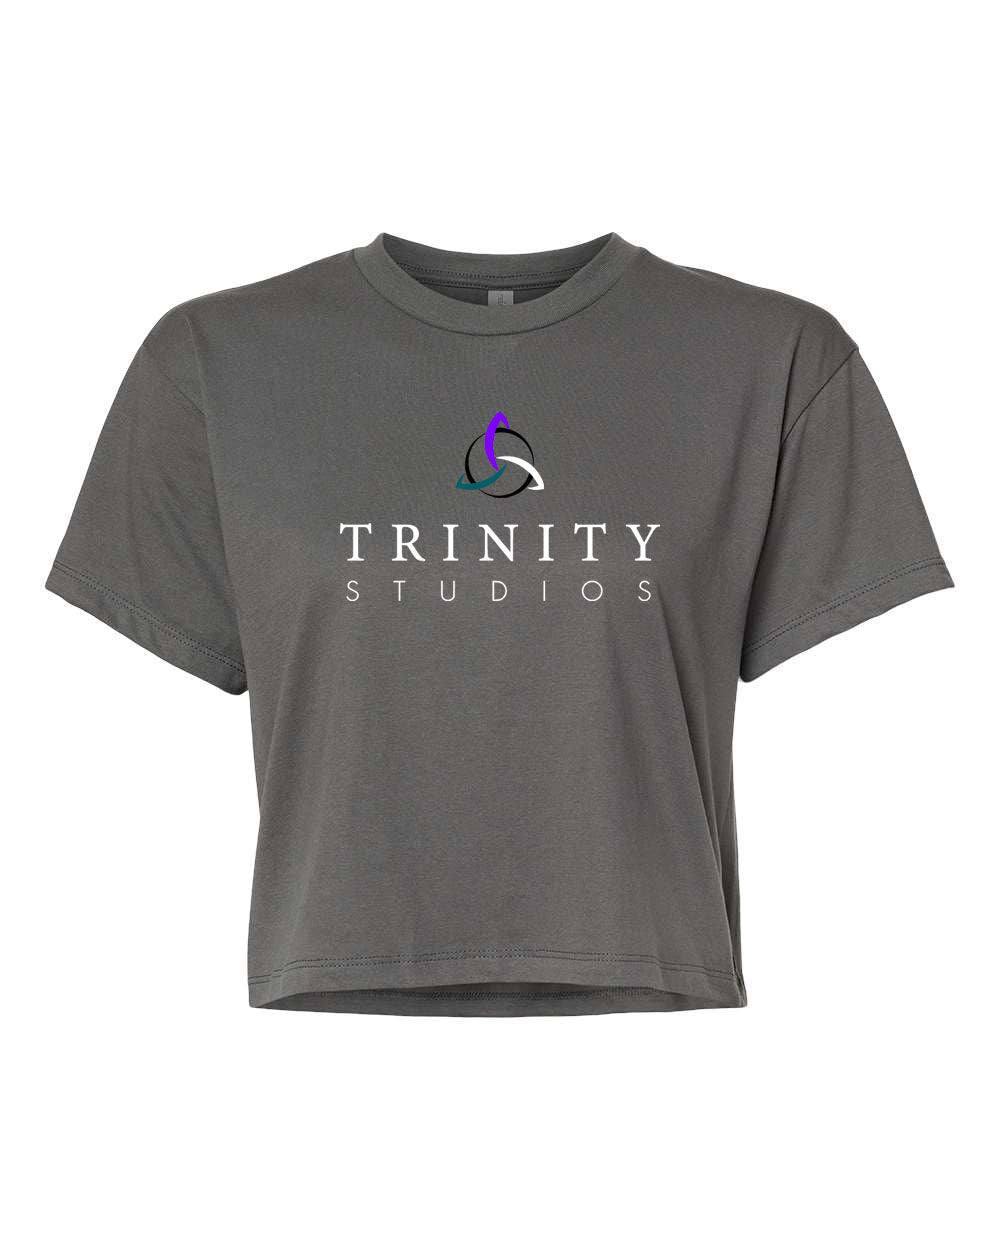 Trinity design 6 Crop Top